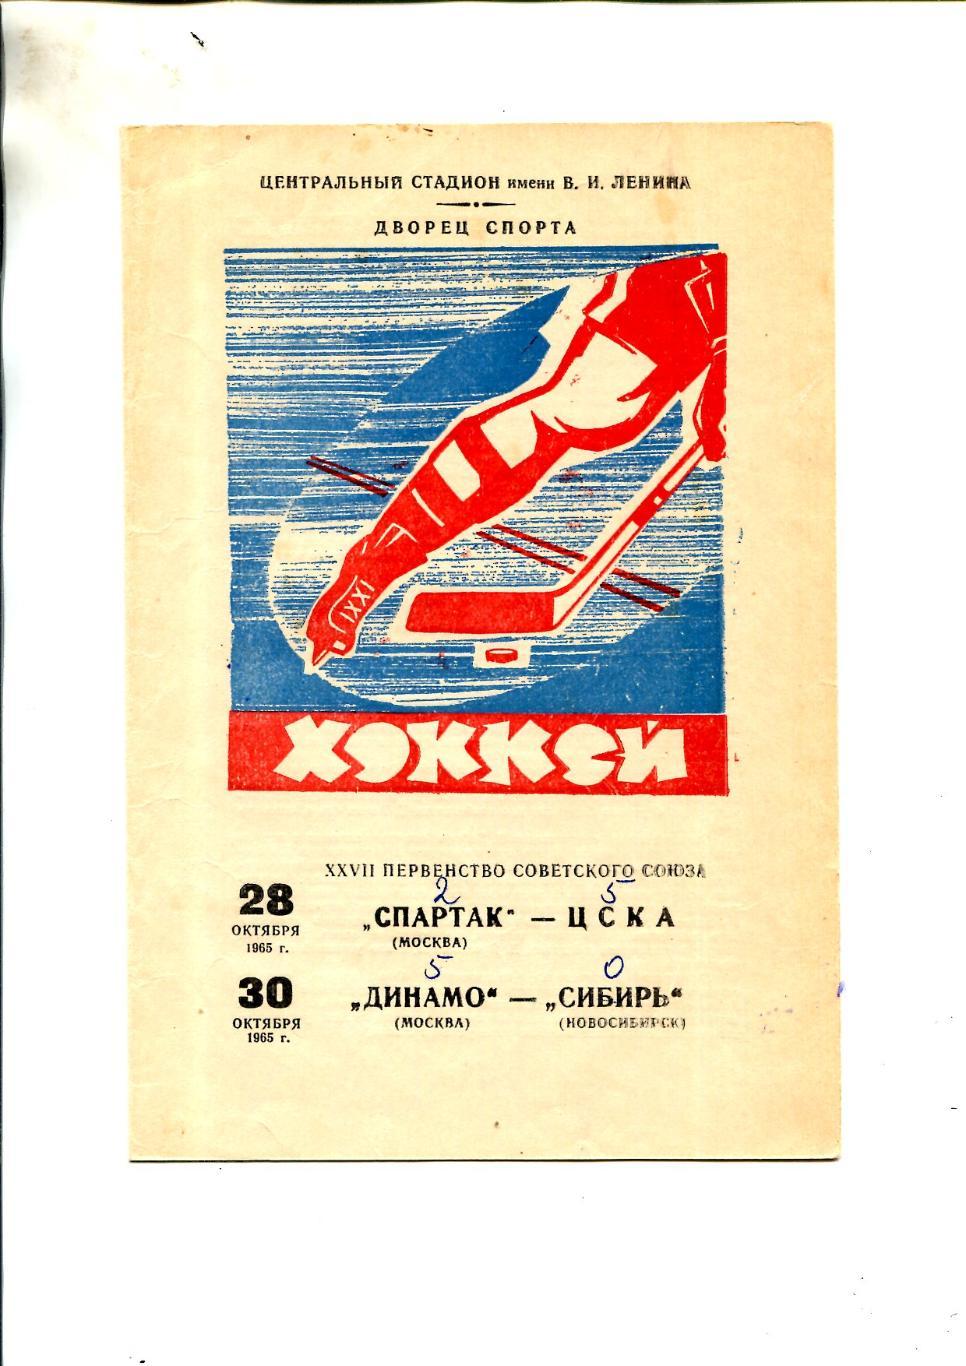 Спартак - ЦСКА, Динамо - Сибирь Новосибирск - 1965